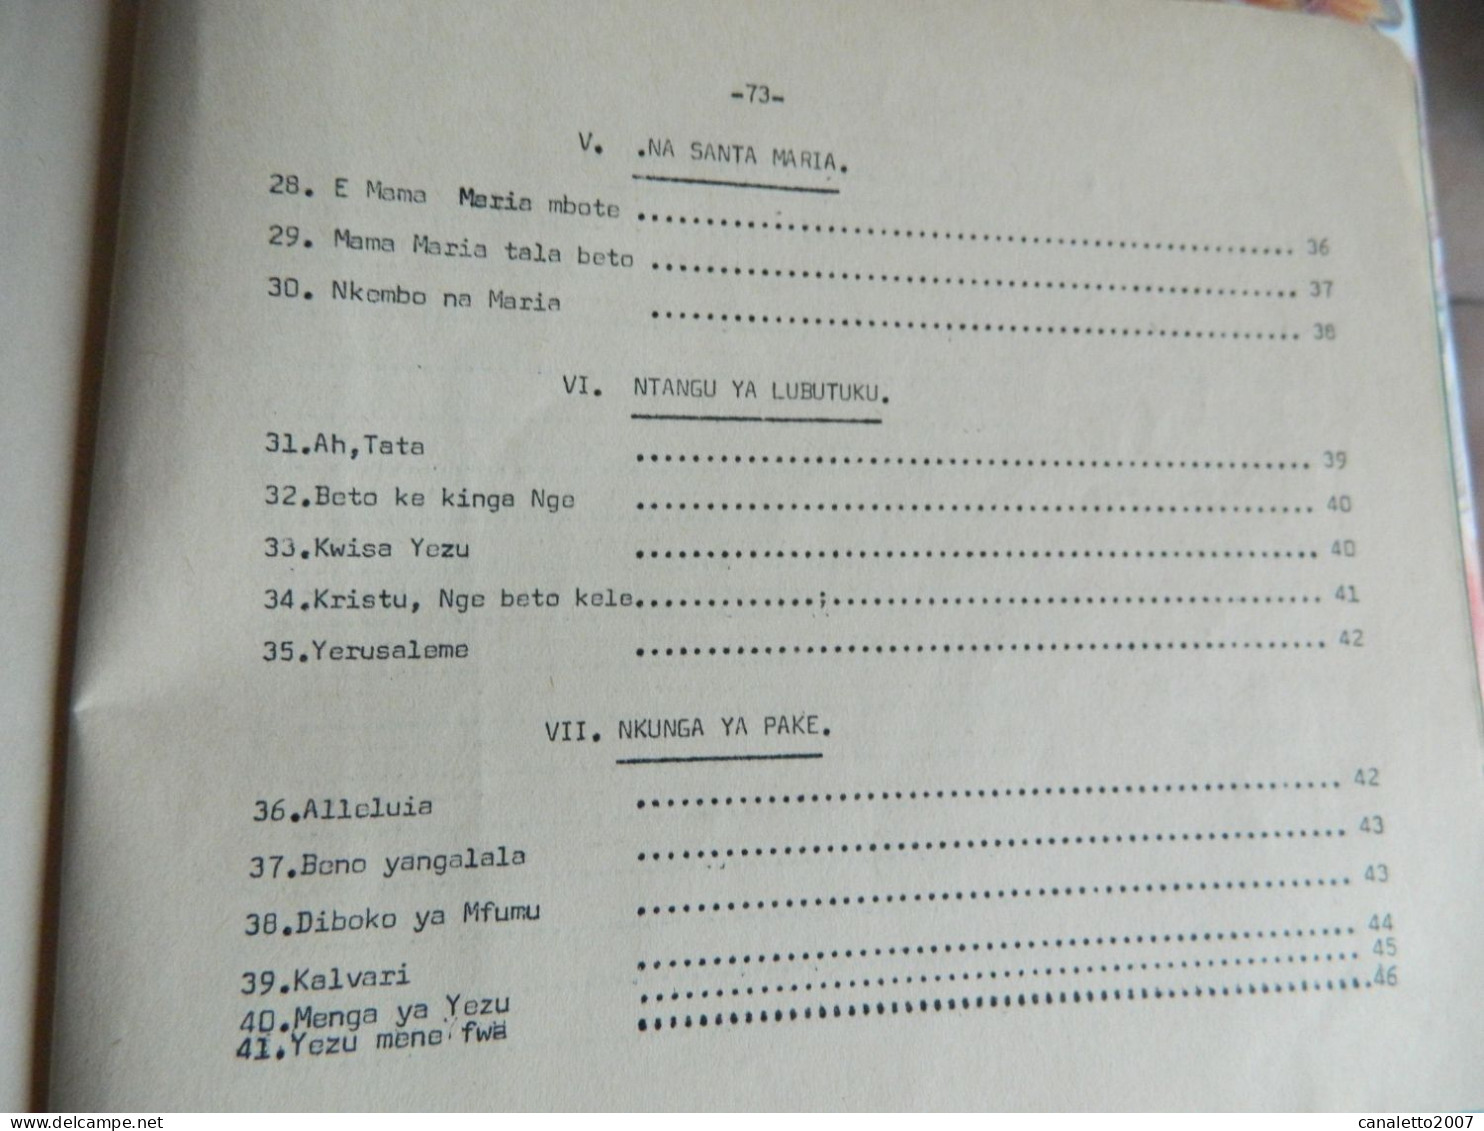 KIKWIT +CONGO: LIVRET DE CHANSONS POUR LA MESS DE 1969 -BETO YIMBA 76 PAGES EN LANGUE DU CONGO -SWAILI ??